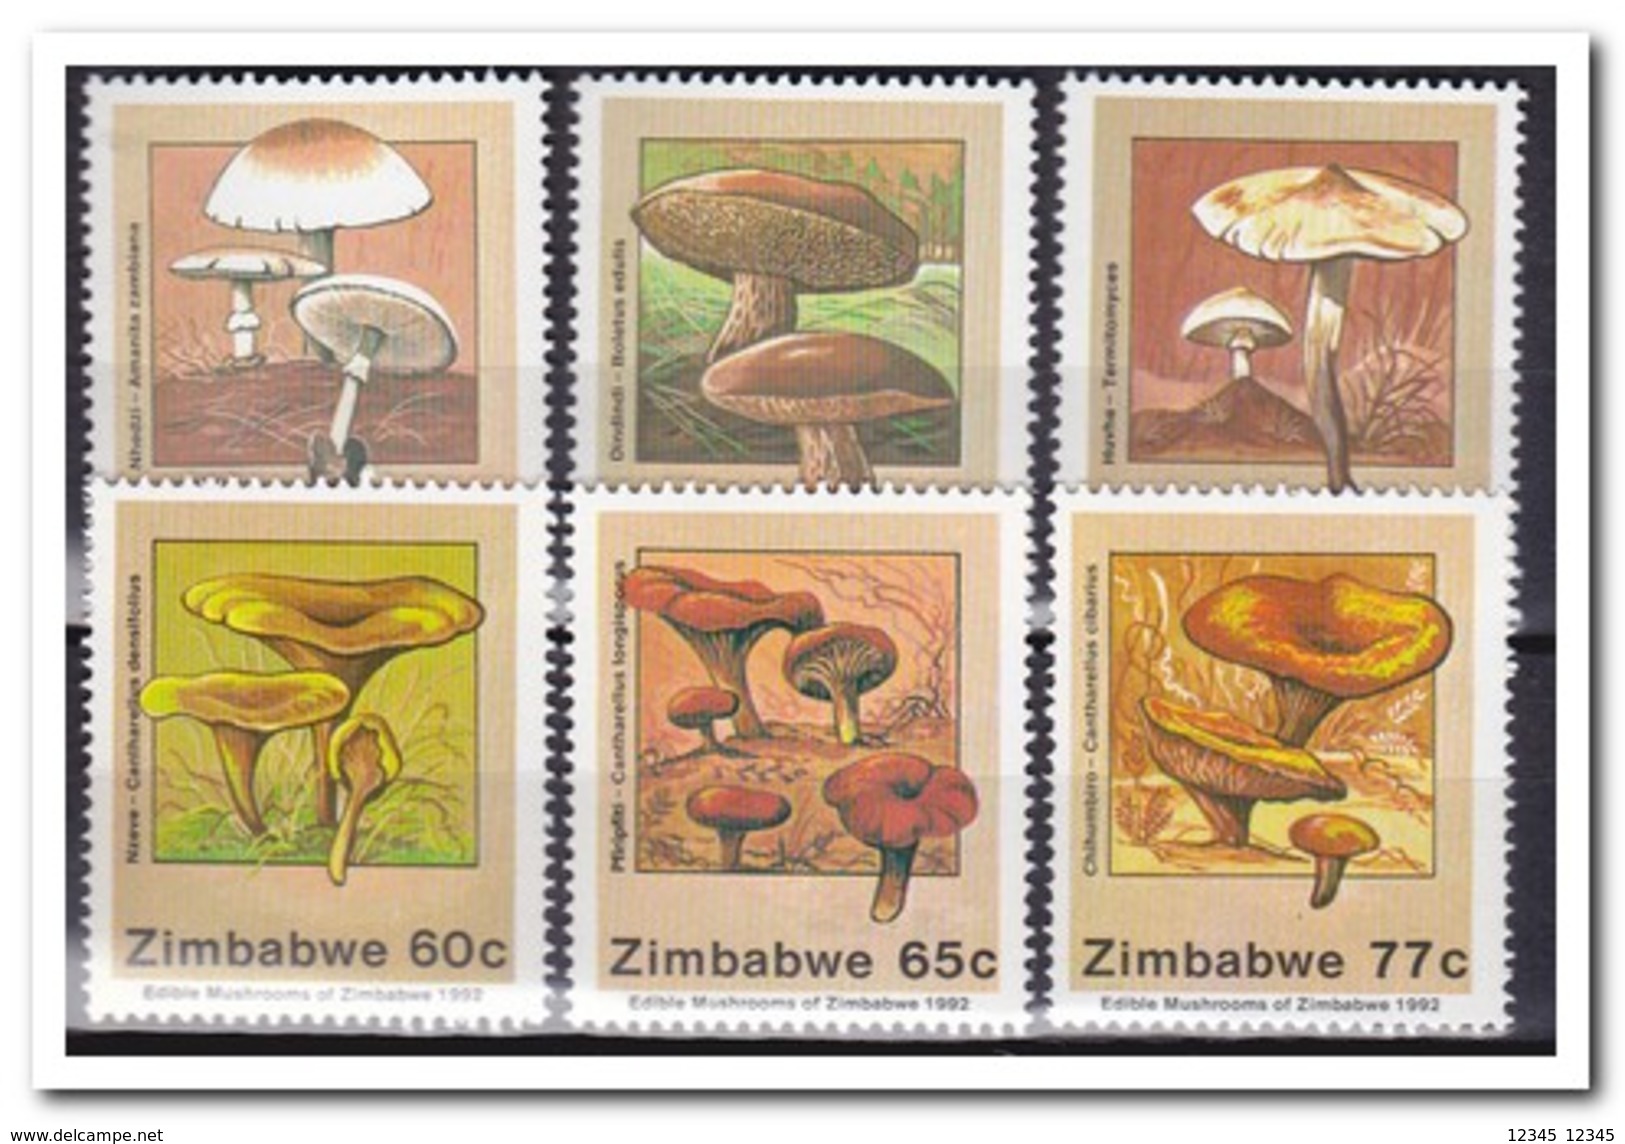 Zimbabwe 1992, Postfris MNH, Mushrooms - Zimbabwe (1980-...)